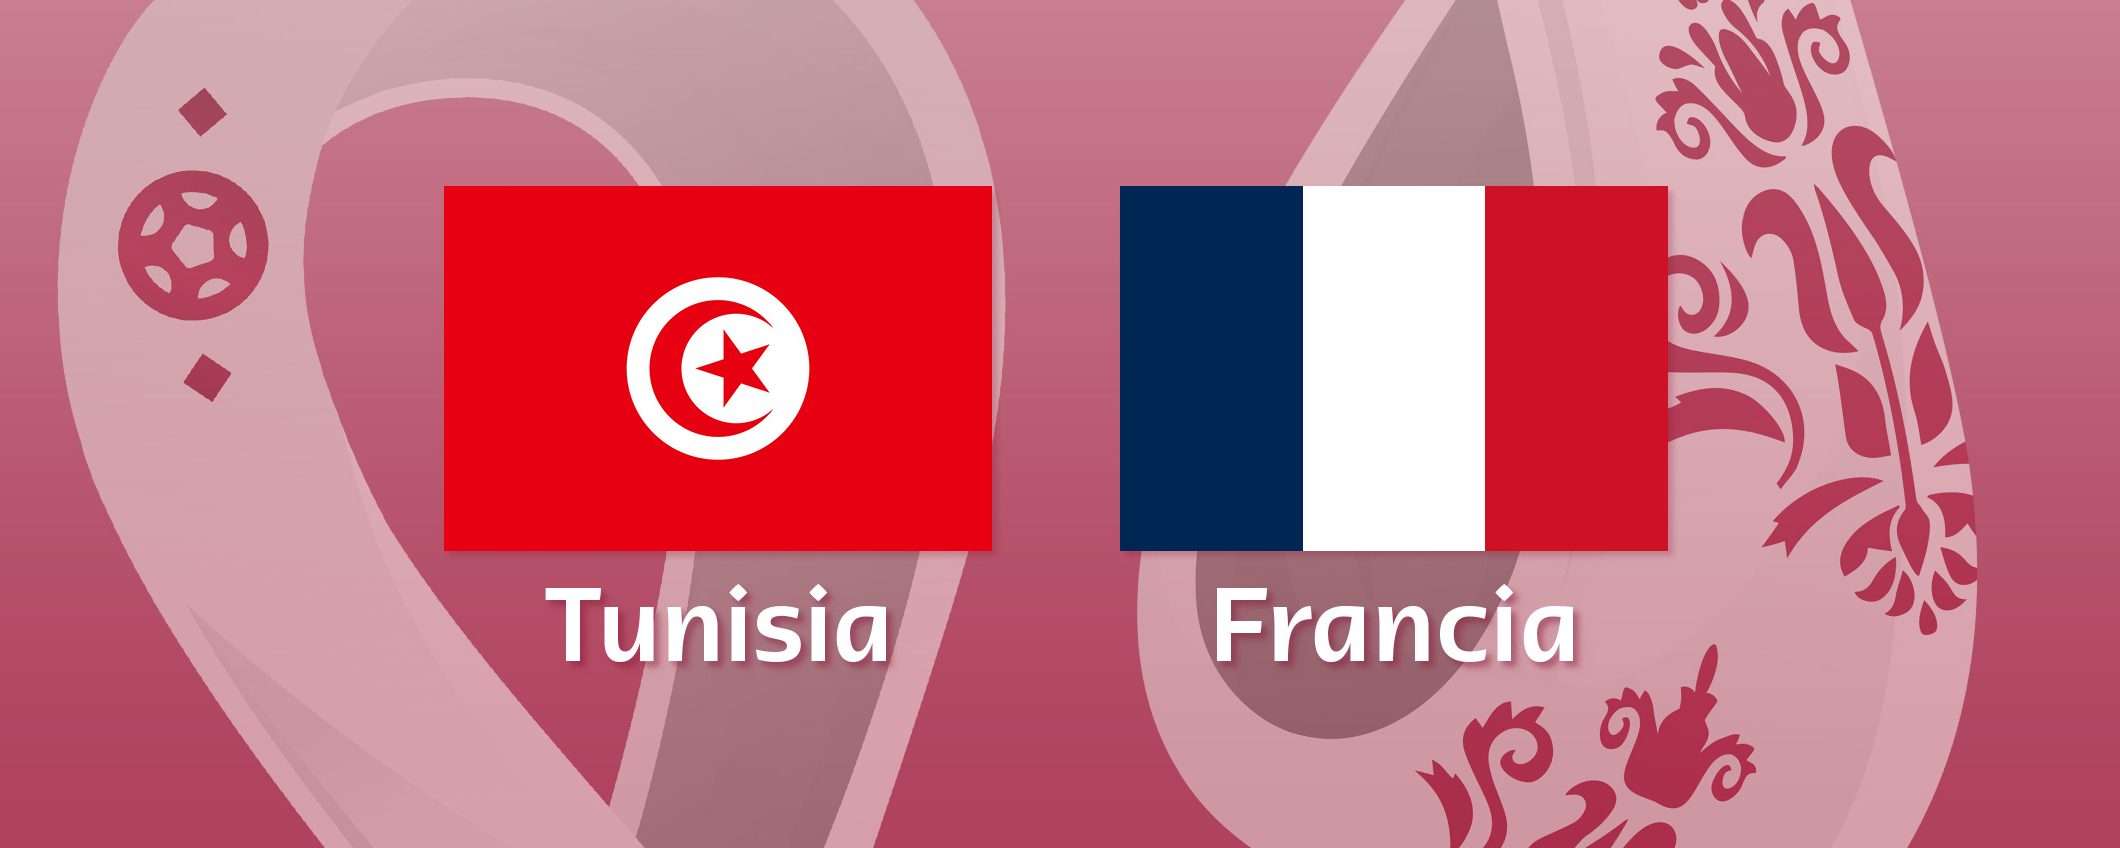 Come vedere Tunisia-Francia in streaming